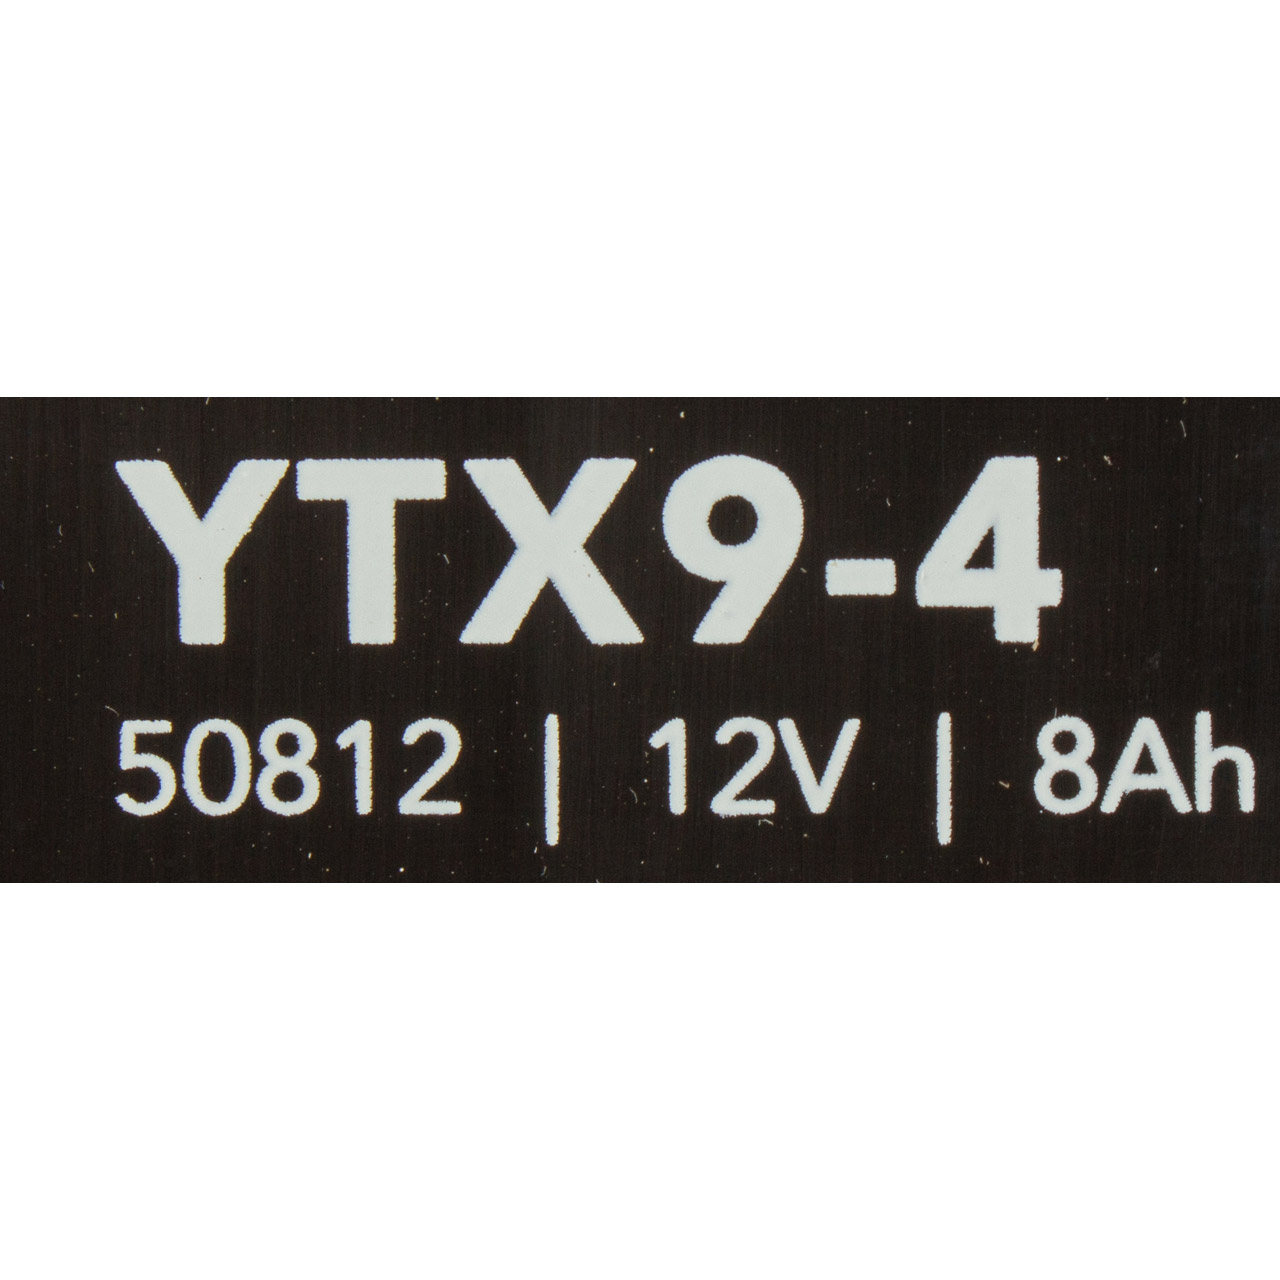 LANDPORT MBYTX94 VRLA AGM Starterbatterie Versorgungsbatterie 12V 8Ah VOLVO S80 2 31296300